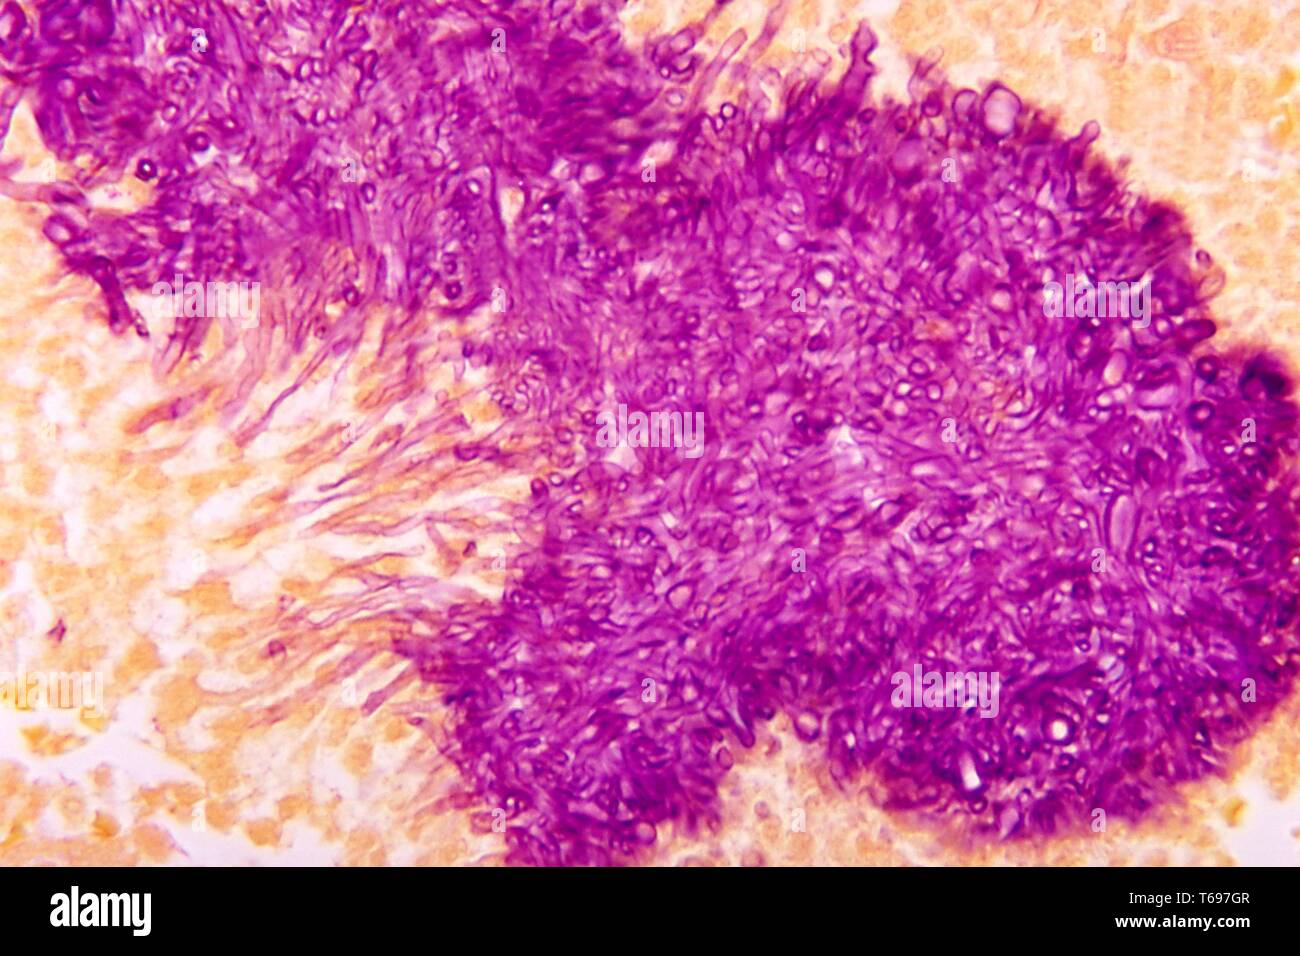 Gridley Fleck photomicrograph des histopathologic Aussehen der schwarzen Korn myzetom Madurella mycetomatis durch den Pilz, 1972 verursacht. Bild mit freundlicher Genehmigung Zentren für Krankheitskontrolle und Prävention (CDC)/Dr Libero Ajello. () Stockfoto